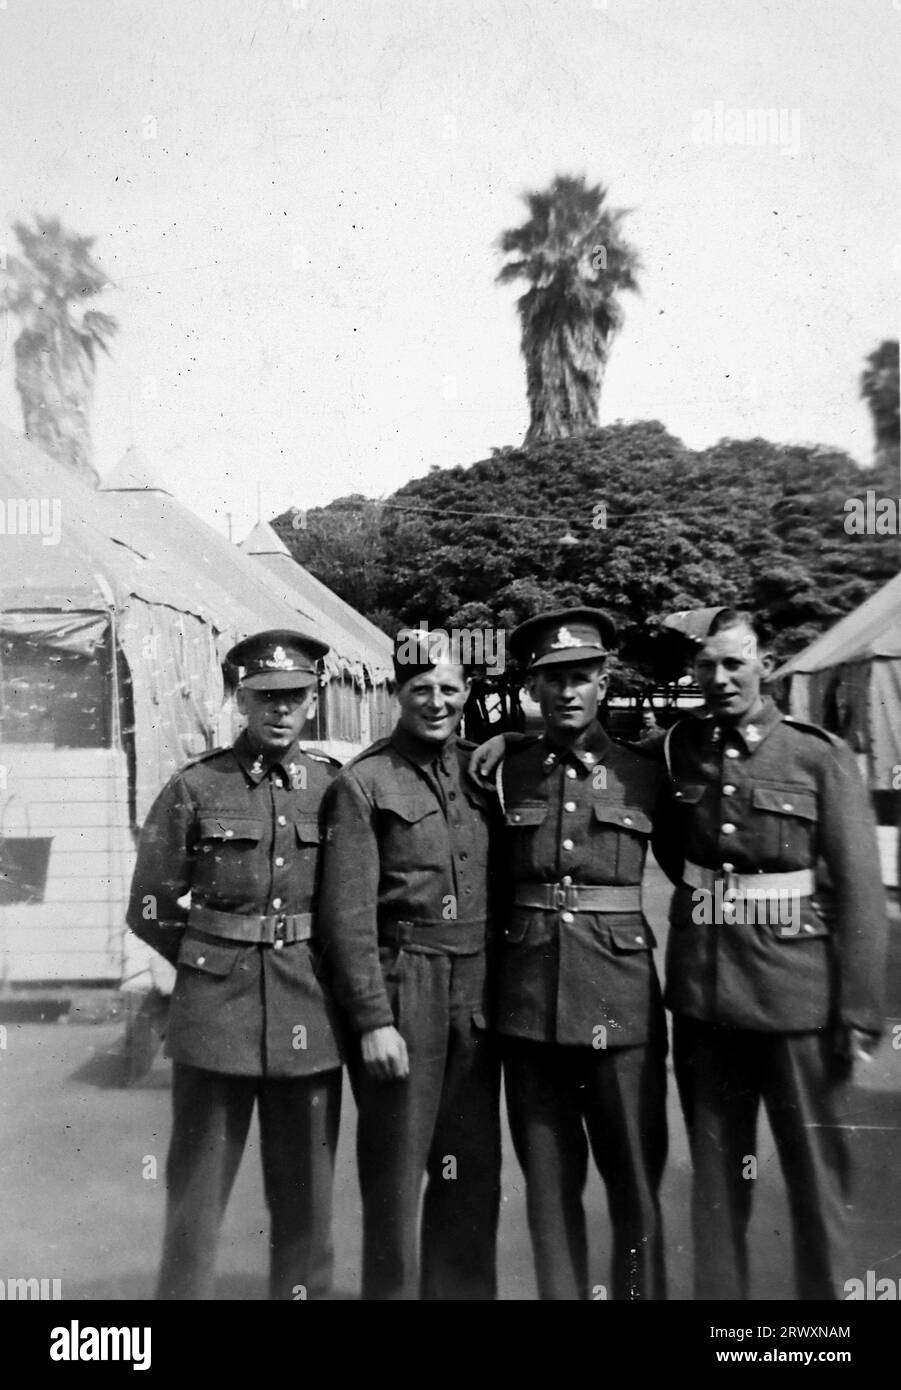 Eine Gruppe von vier Soldaten im Santa Monica Rest Camp. Seltenes Foto: Aus einer Sammlung eines unbekannten britischen Soldaten über die No. 1 Composite Demonstration, AA Battery, Tour durch die USA, vom 11. Juli 1943. Dies ist eines von mehr als hundert Bildern in der Sammlung, die im Durchschnitt etwa 4 x 3 Zoll groß waren. Stockfoto